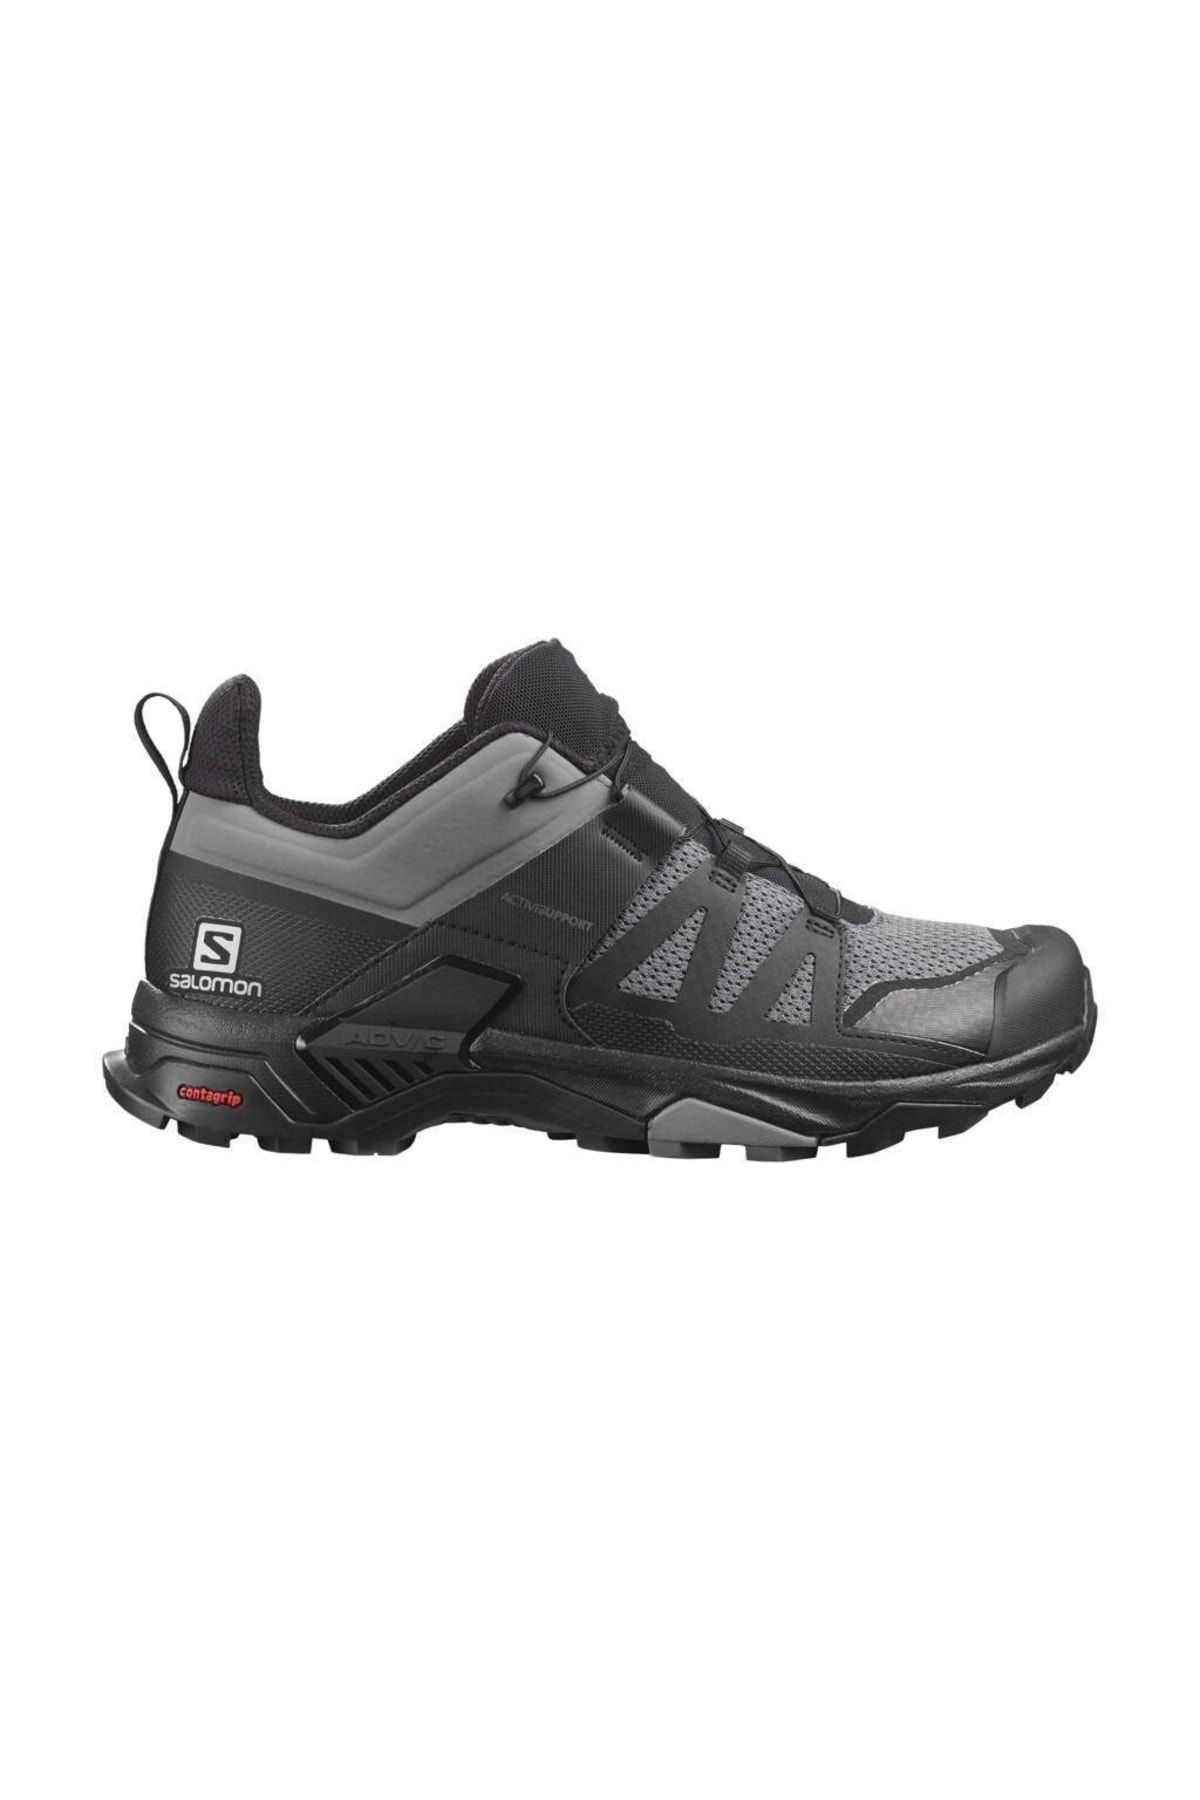 Salomon Erkek Outdoor Ayakkabı X Ultra 4 L41385600